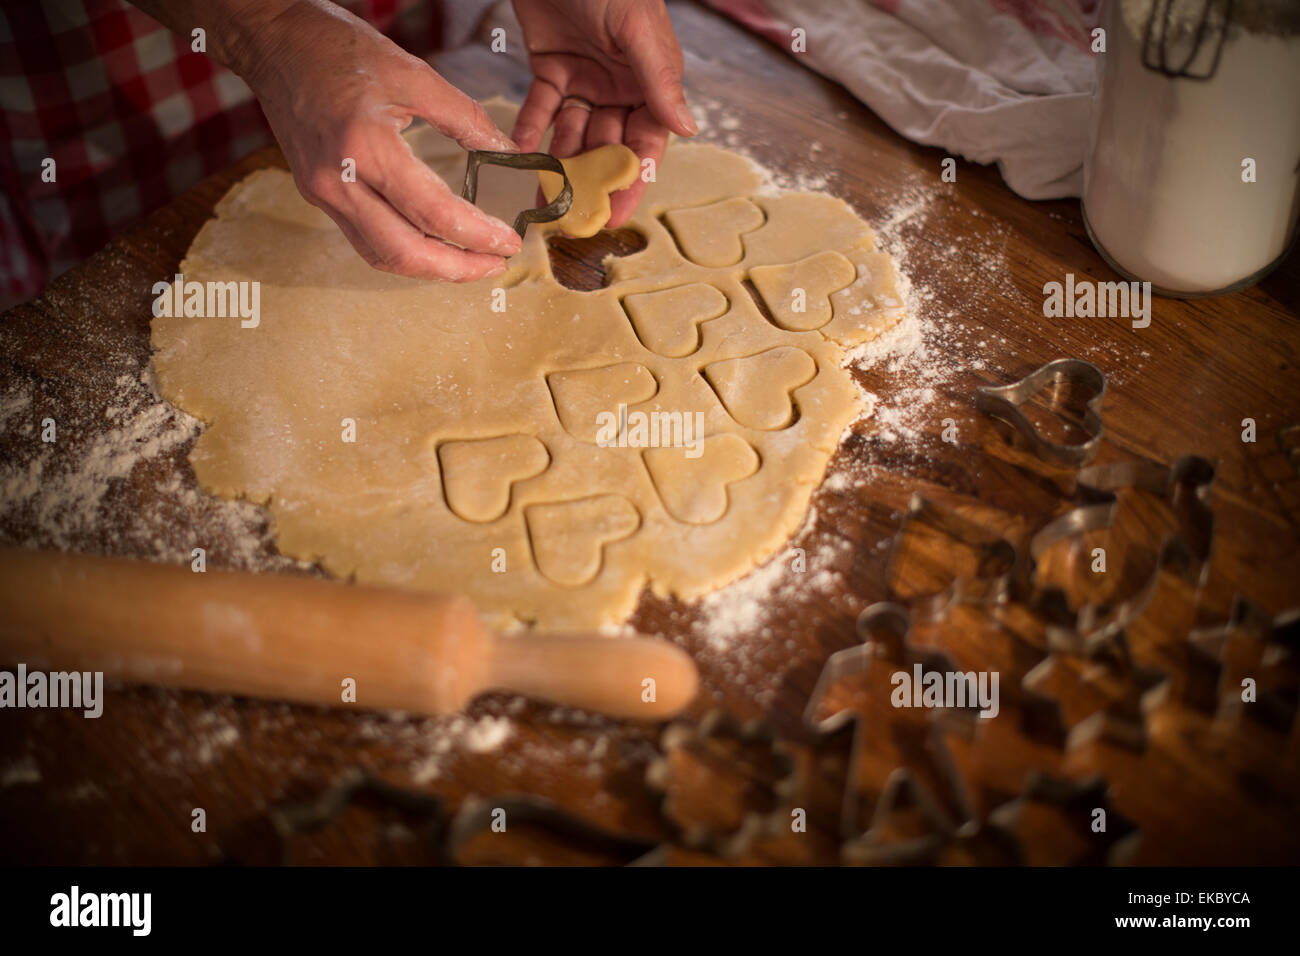 Couper des formes dans la pâte pour faire des biscuits Banque D'Images